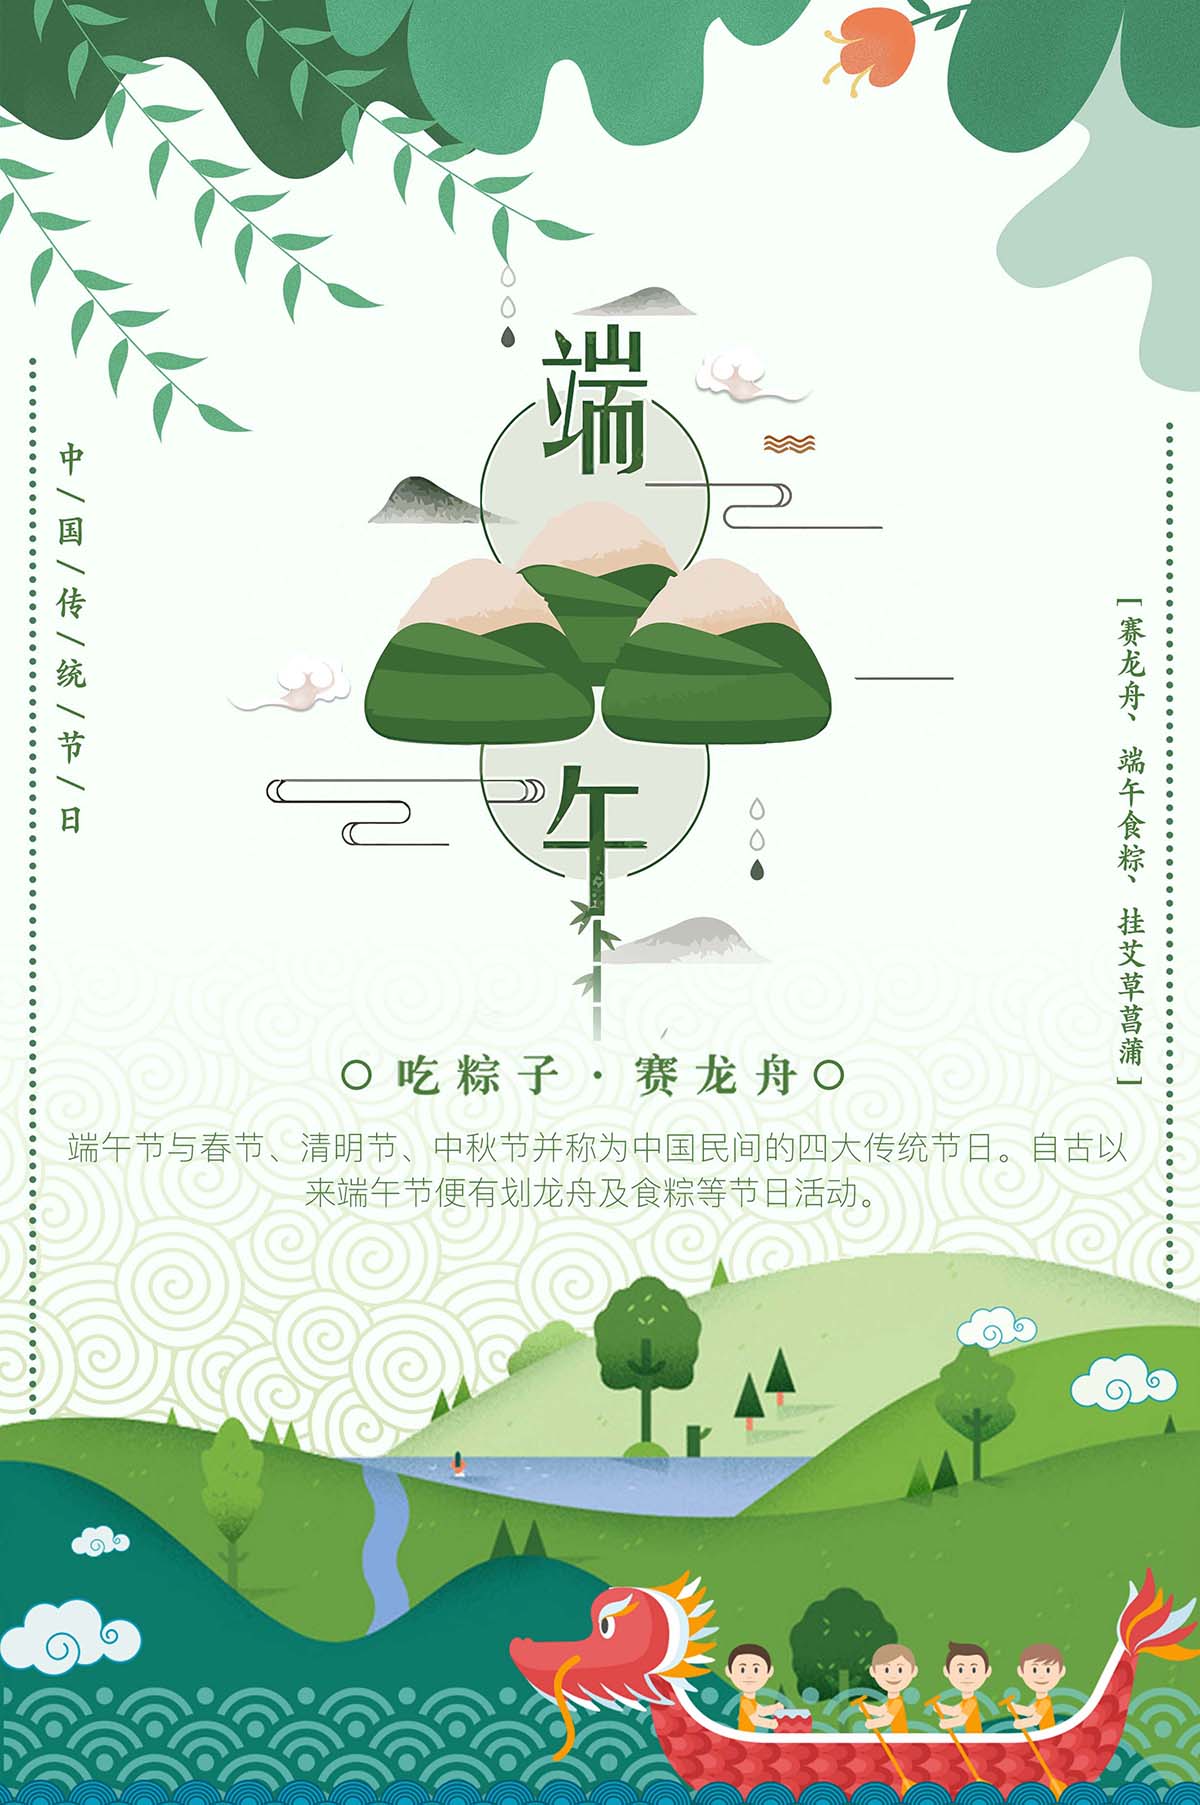 端午节吃粽子赛龙舟海报设计PSD源文件